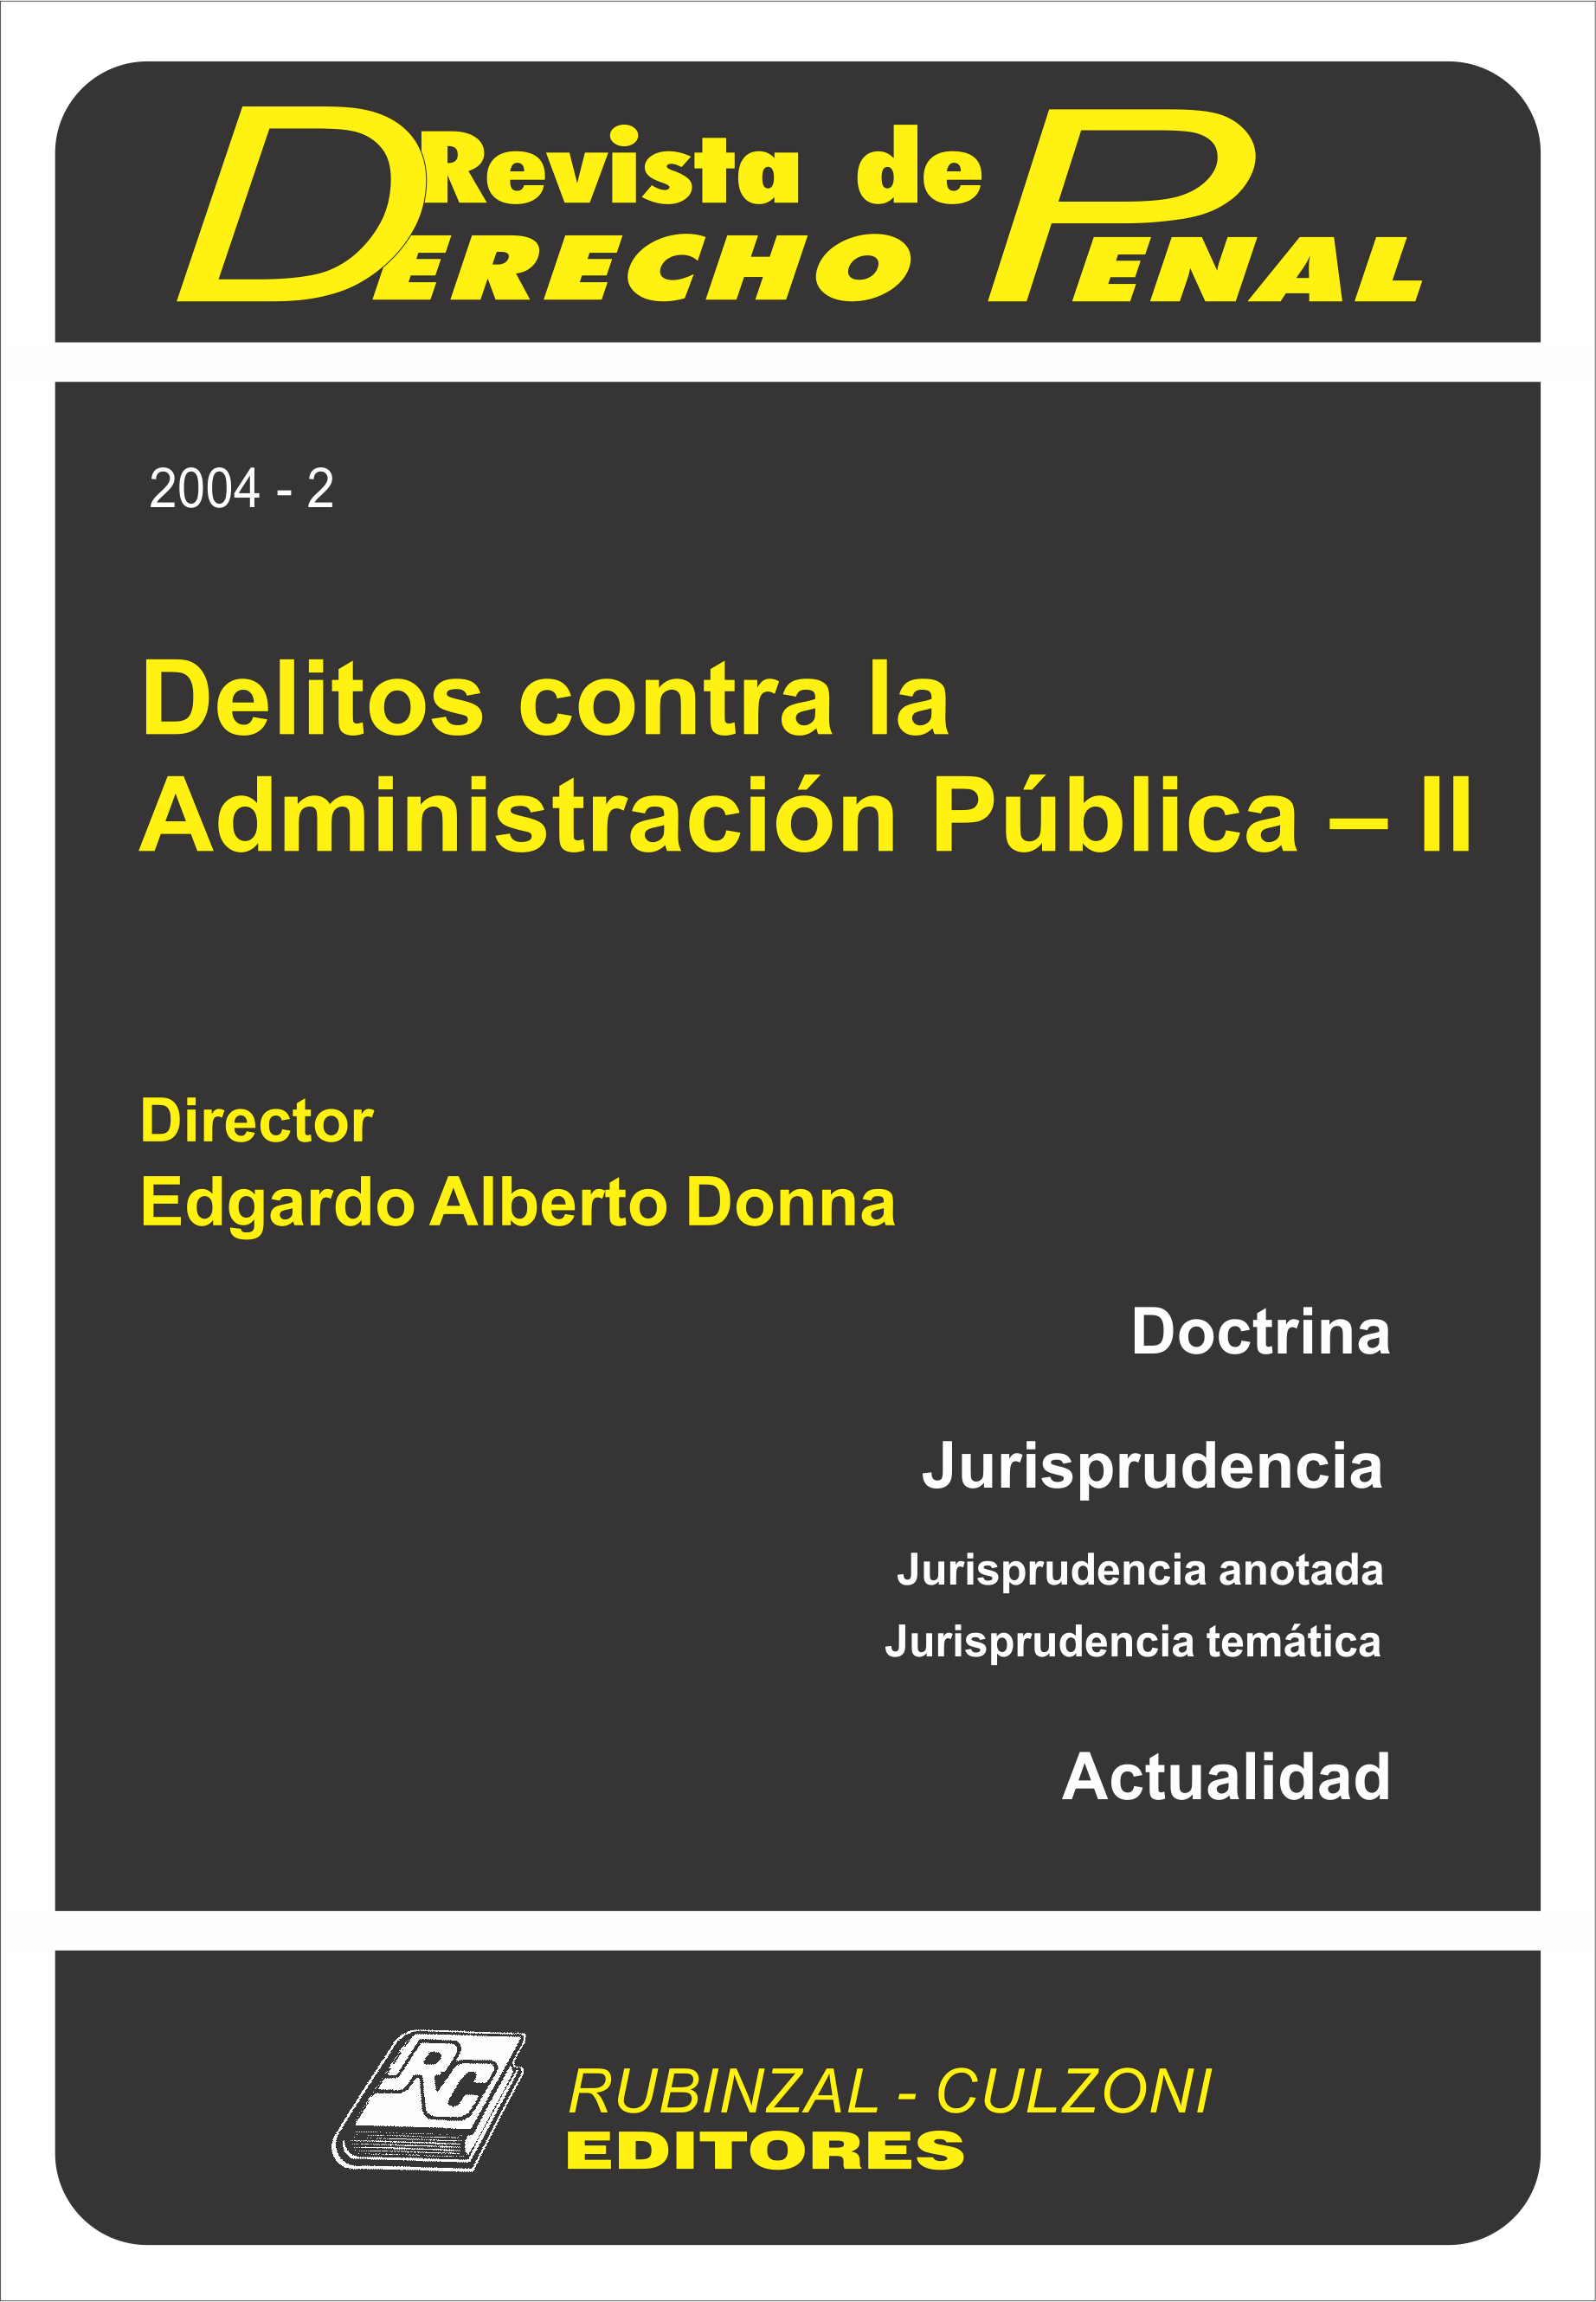 Revista de Derecho Penal - Delitos contra la Administración Pública - II. [2004-2]